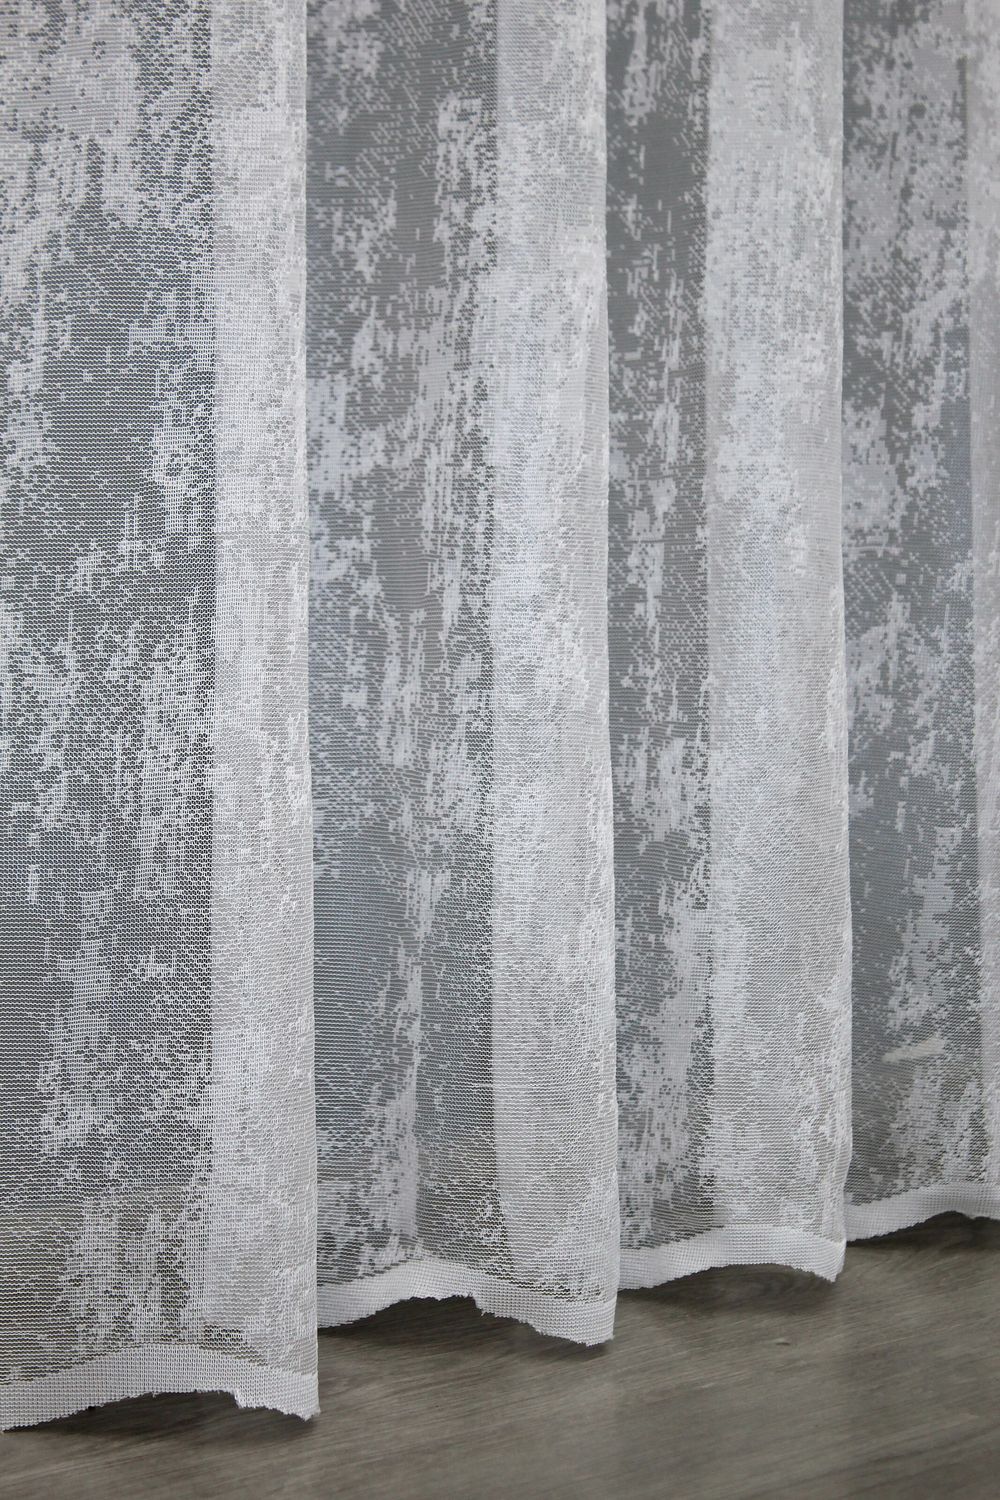 Тюль жаккард, коллекция "Мрамор" цвет белый 1400т, Тюль на метраж, Нужную Вам ширину указывайте при покупке. (Ширина набирается по длине рулона.), 2,8 м.